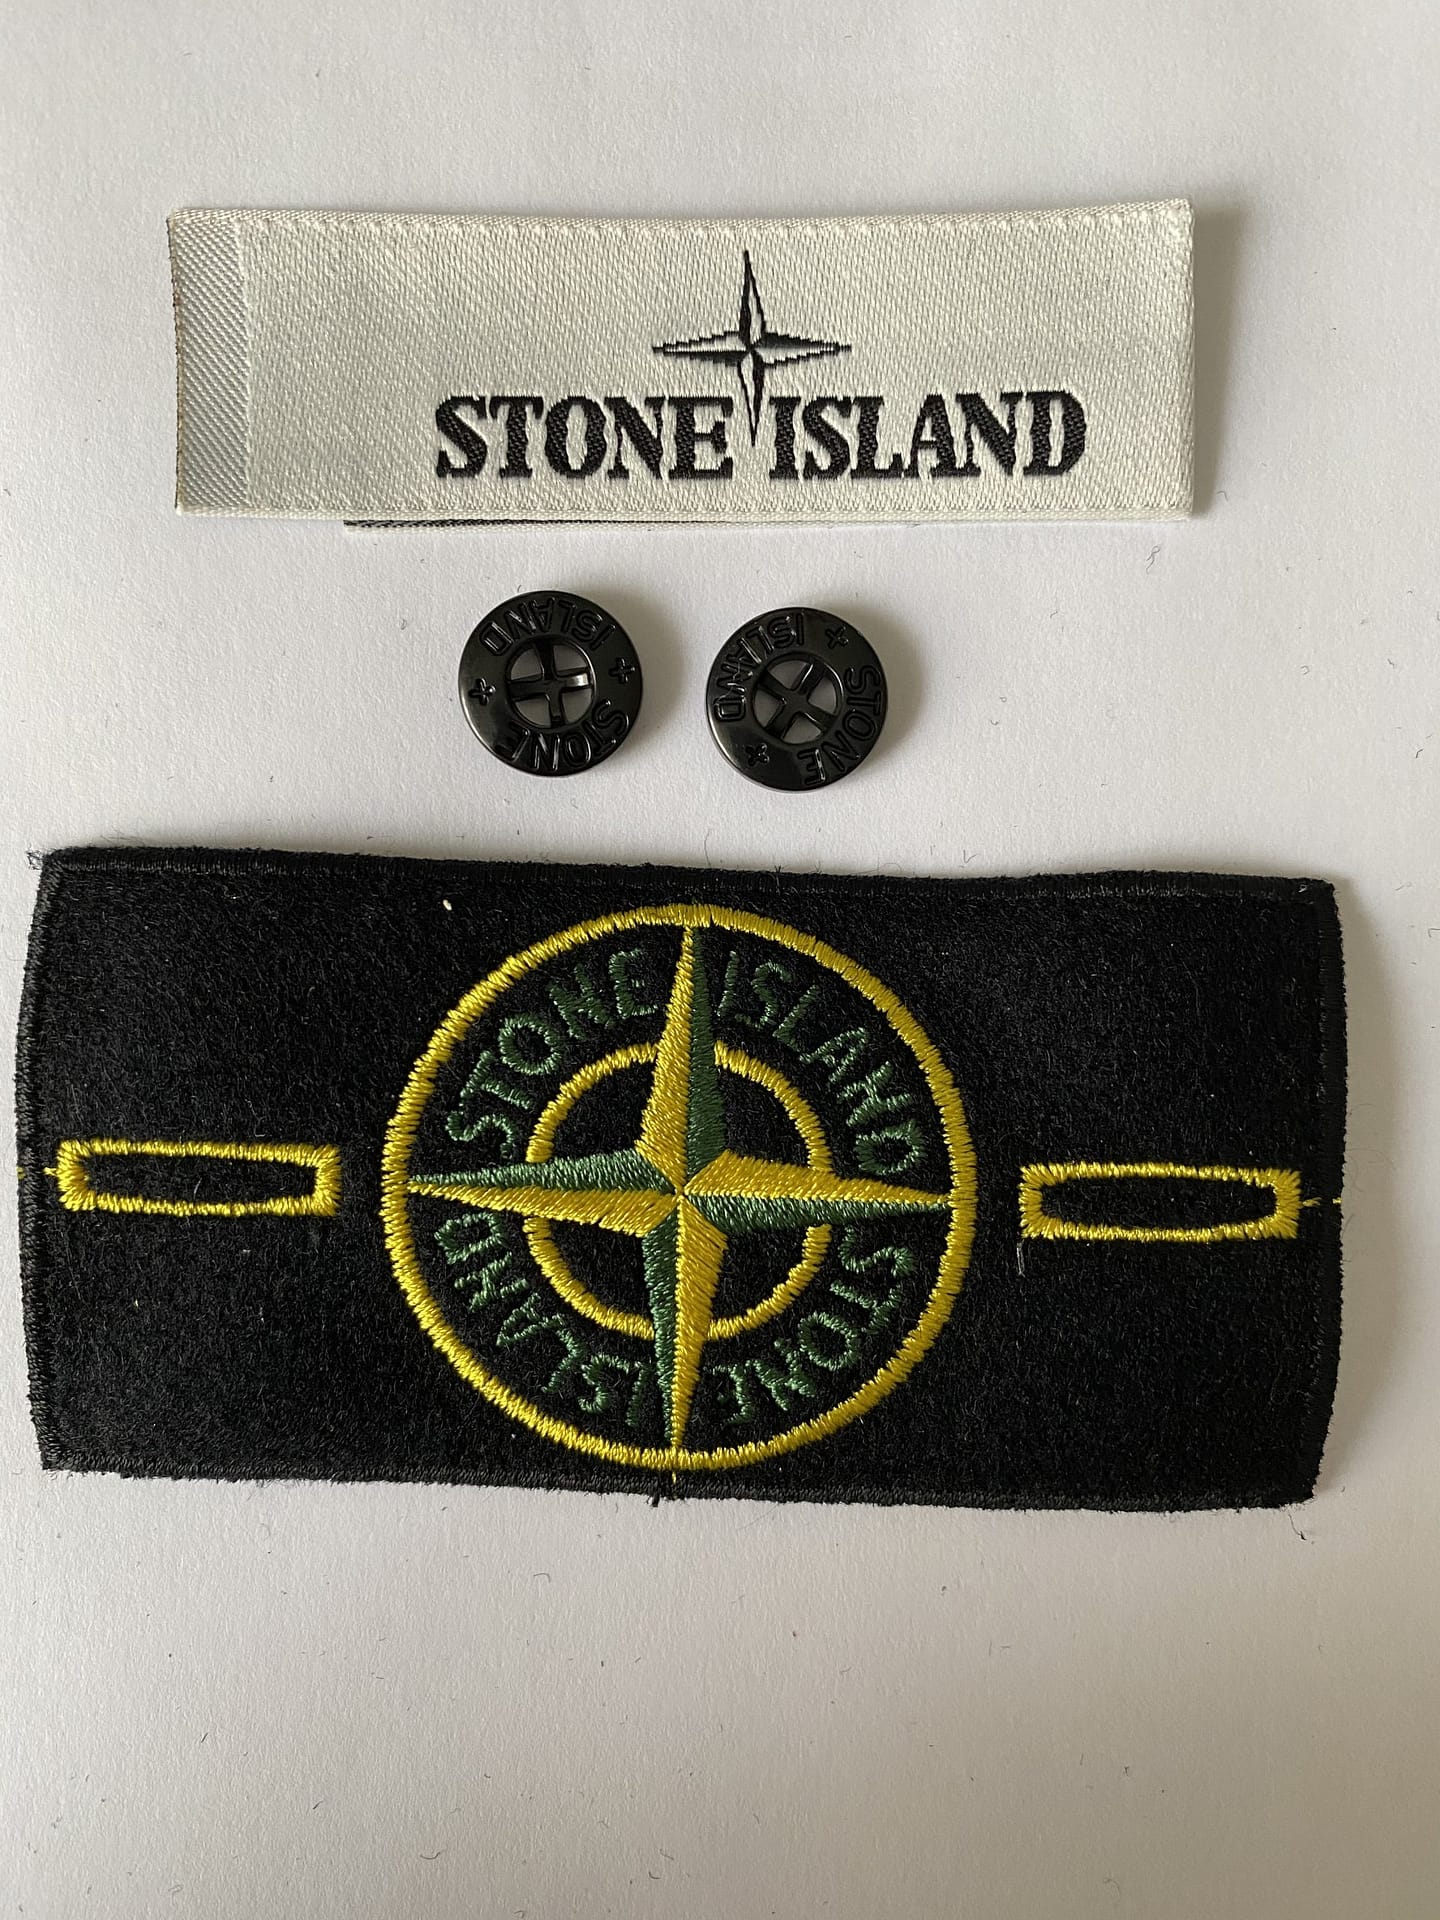 ív elvégezni az iskolát Előfeltétel stone island badge bestellen ...